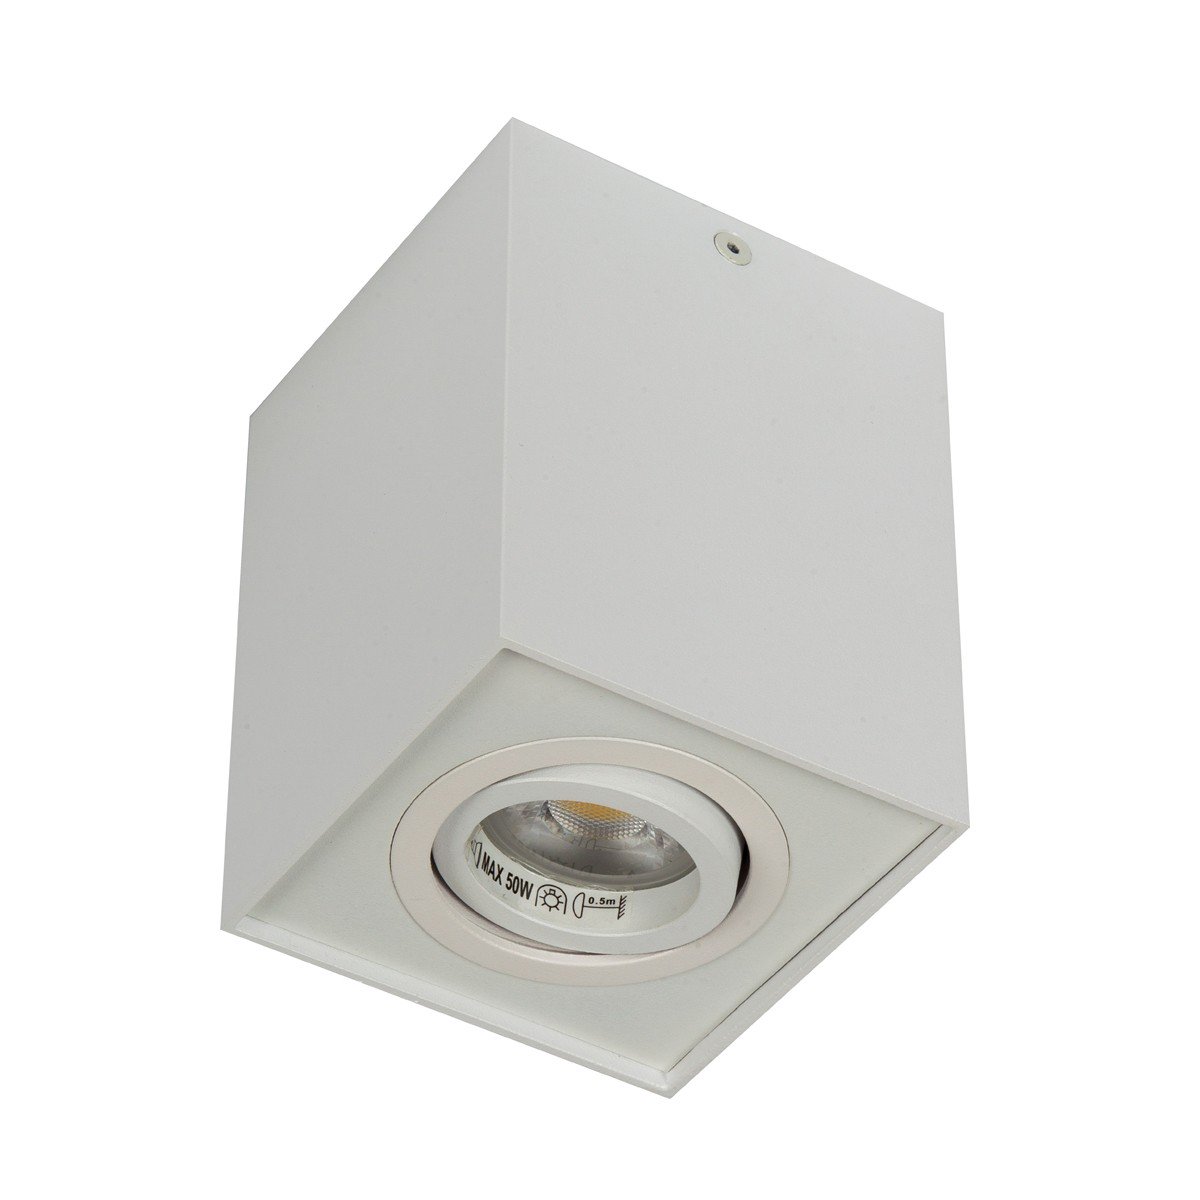 Φωτιστικό αλουμινίου οροφής κύβος  GU10 35W κινητό λευκό   96χ96χ125mm VK/03005/W